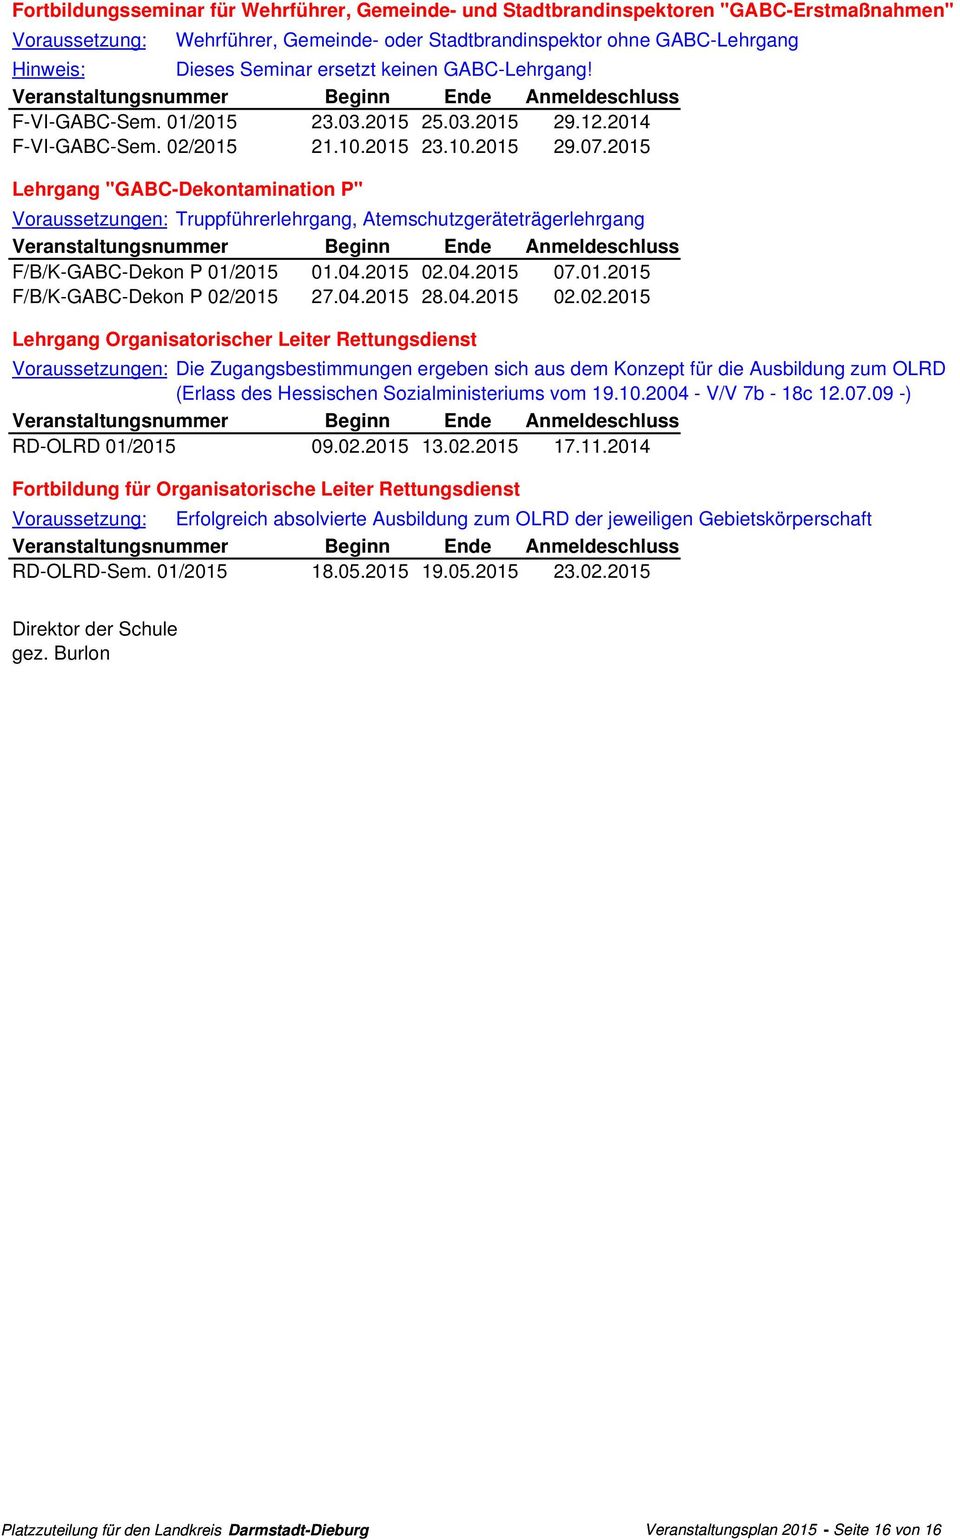 2015 ehrgang "GABC-Dekontamination P" oraussetzungen: Truppführerlehrgang, Atemschutzgeräteträgerlehrgang T F/B/K-GABC-Dekon P 01/2015 01.04.2015 02.04.2015 07.01.2015 T F/B/K-GABC-Dekon P 02/2015 27.